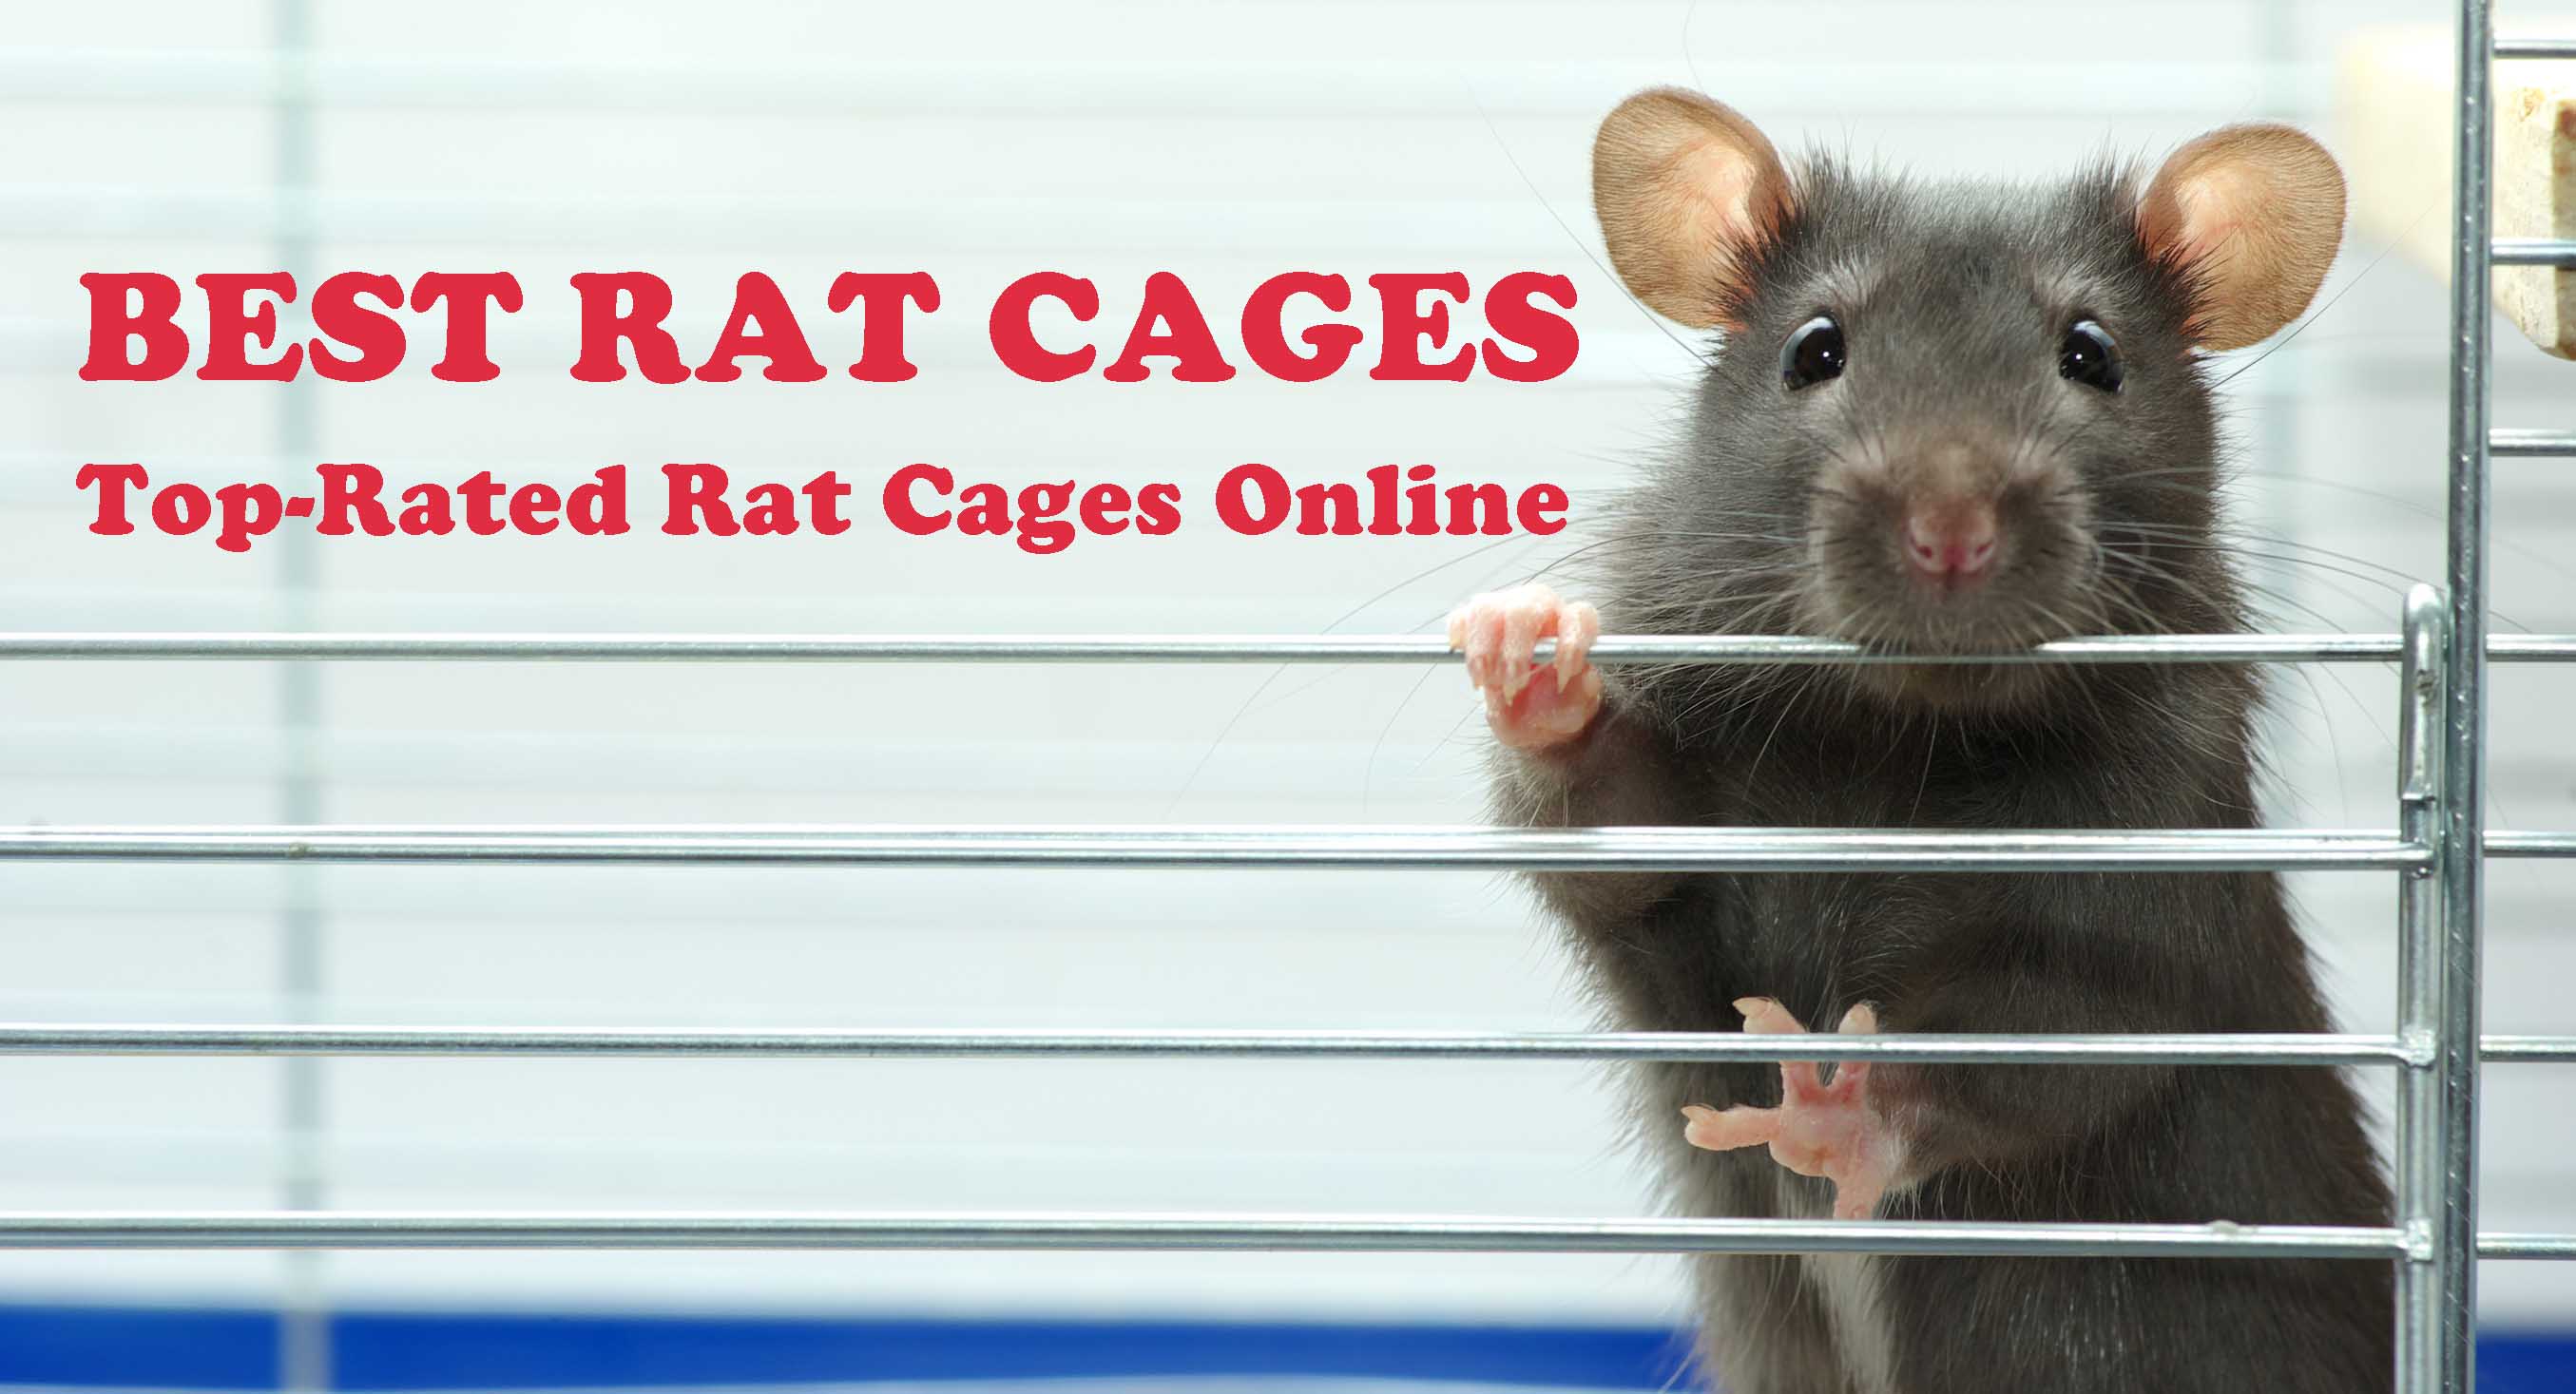 Best Rat Cages